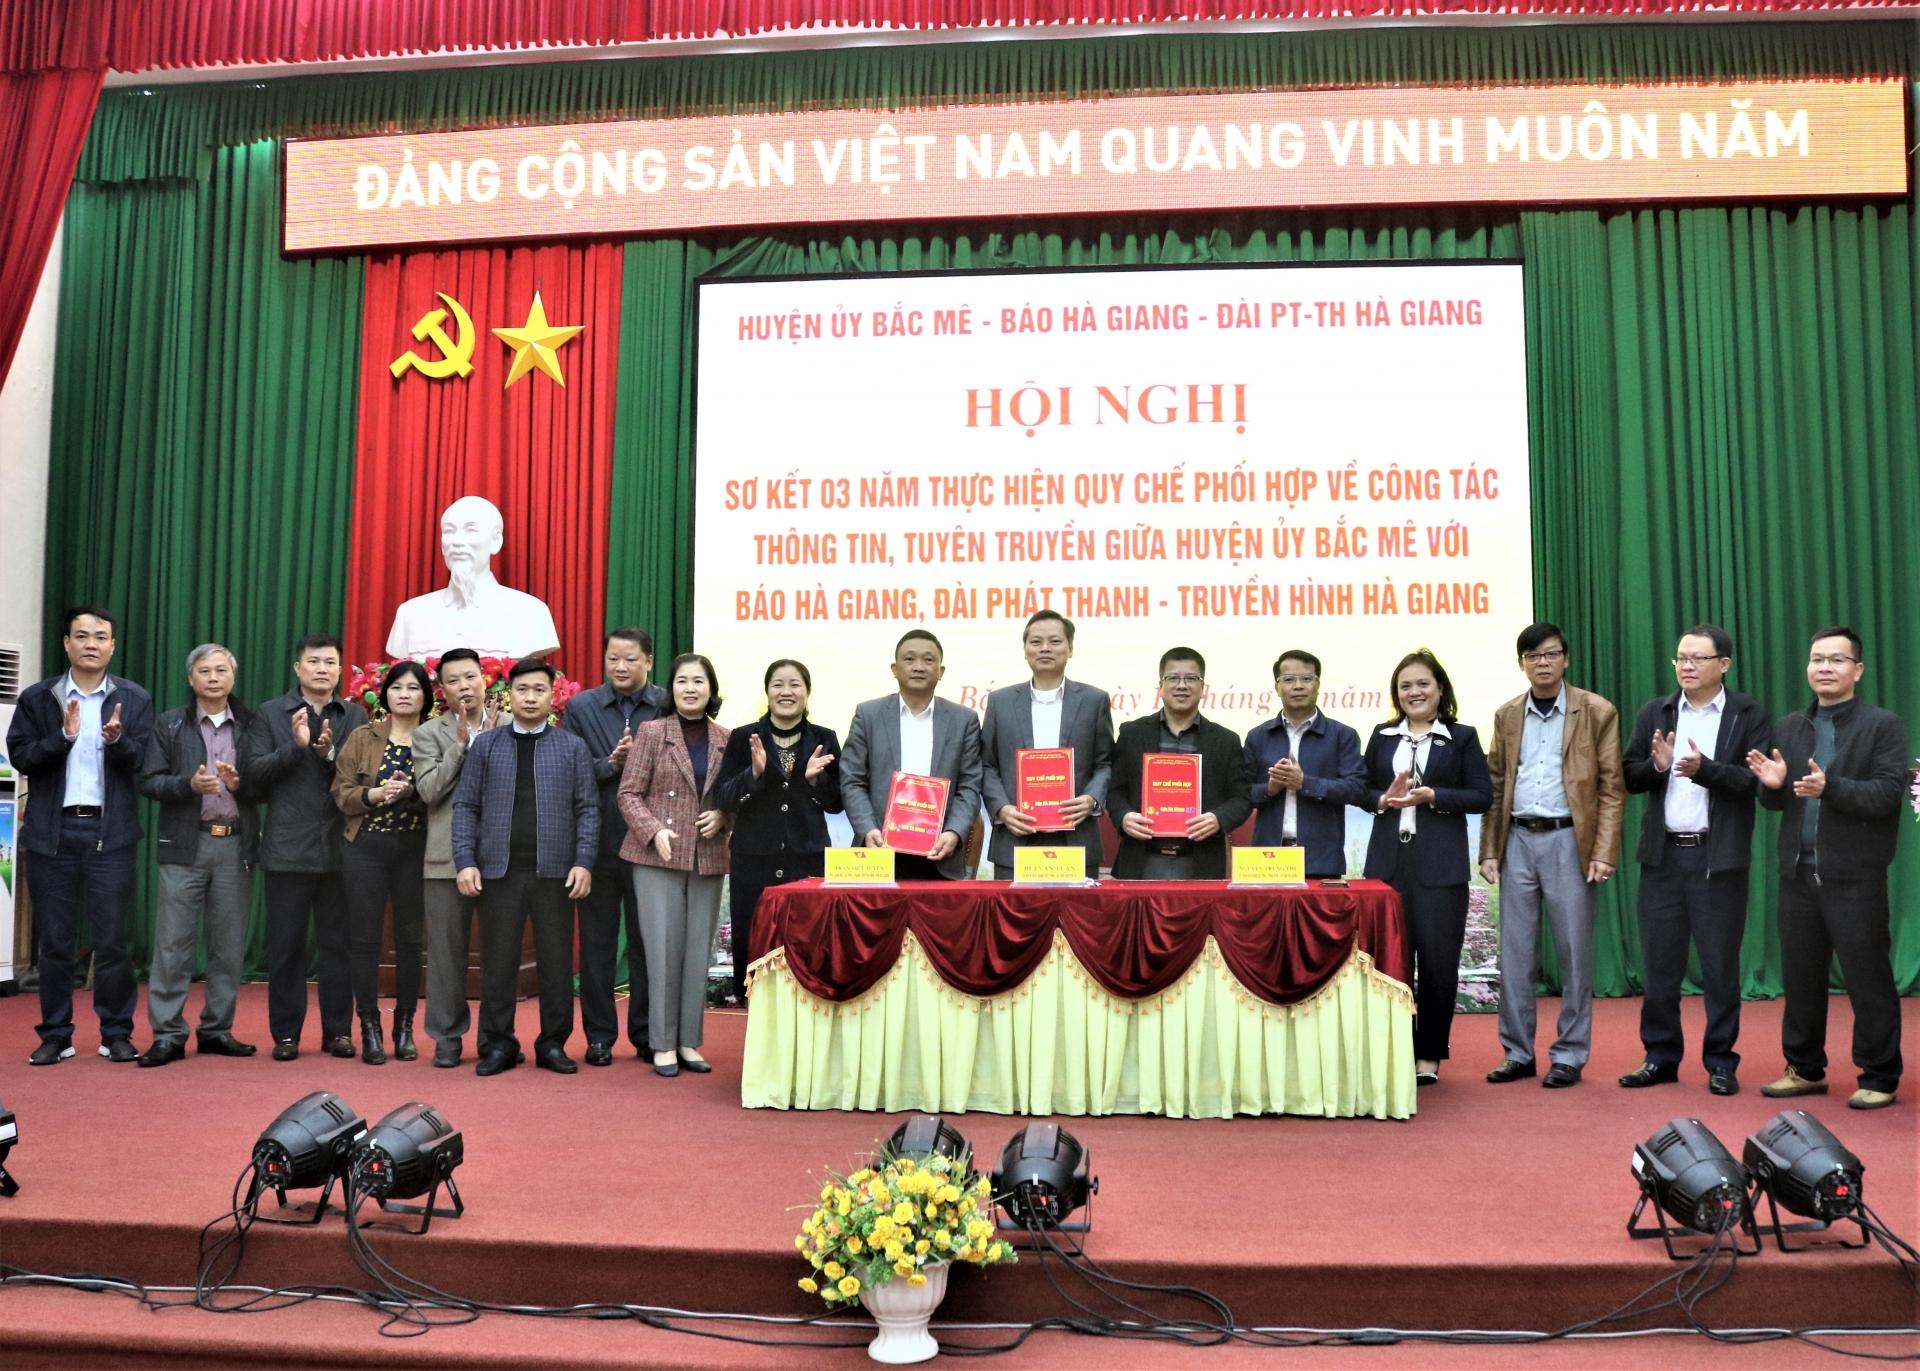 Huyện Bắc Mê, Báo Hà Giang, Đài PT - TH Hà Giang ký kết Quy chế phối hợp tuyên truyền